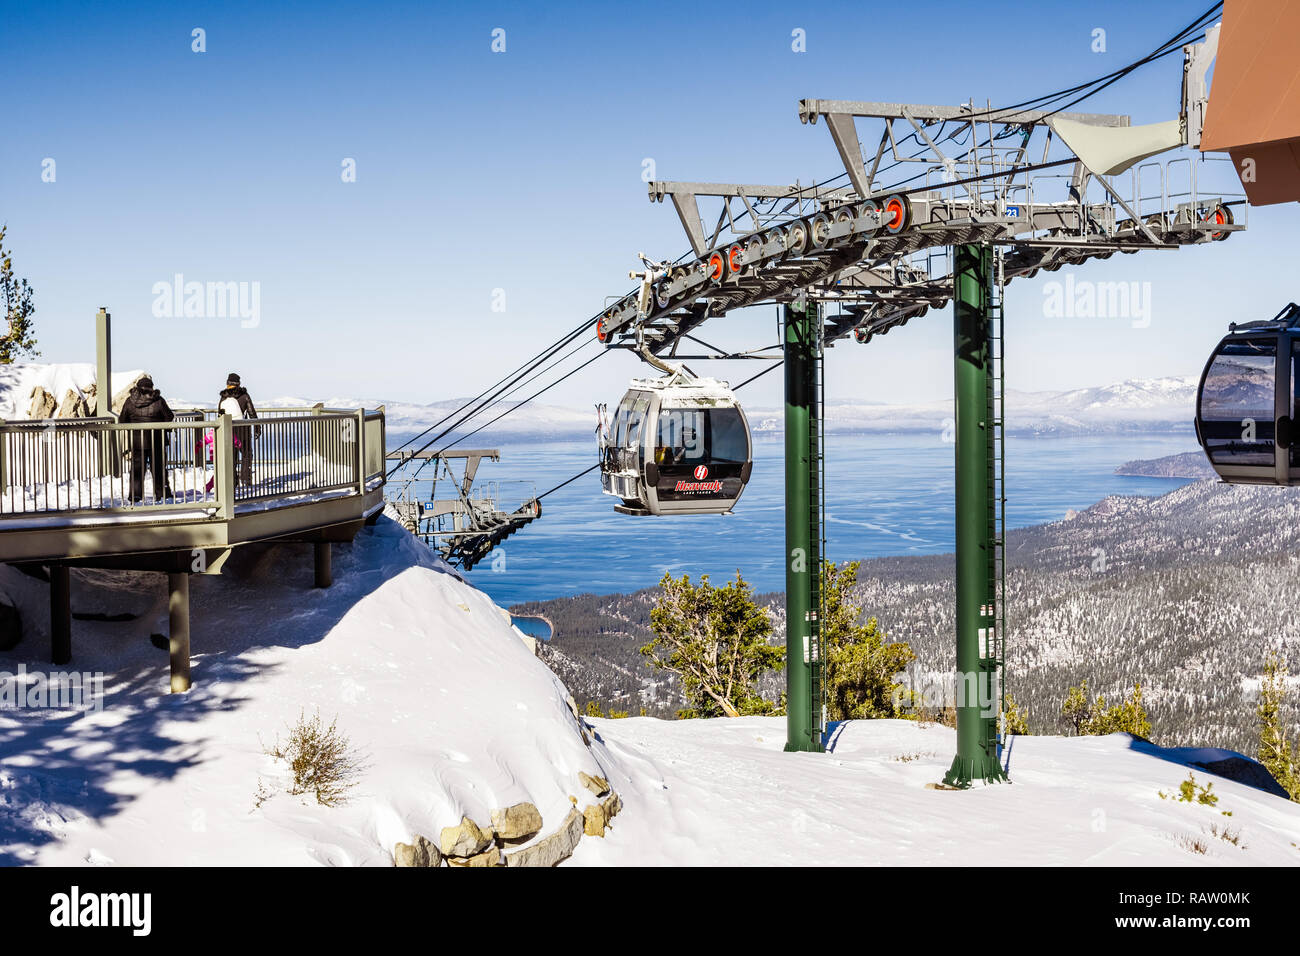 Dicembre 26, 2018 South Lake Tahoe / CA / STATI UNITI D'AMERICA - Heavenly ski resort turistico di Gondola coperta in una giornata di sole Foto Stock